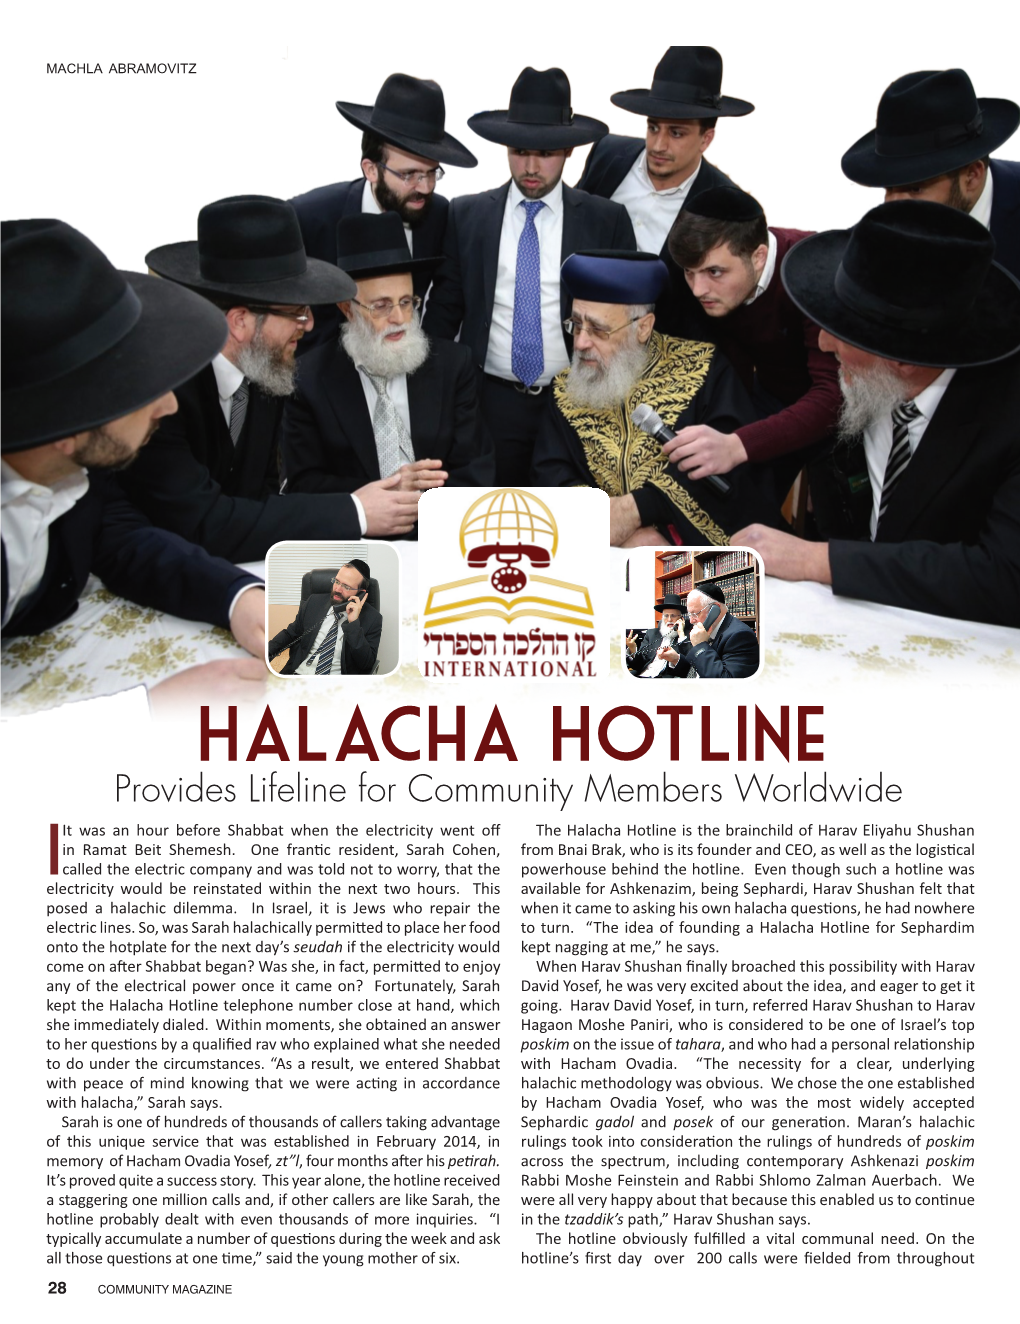 Halacha Hotline